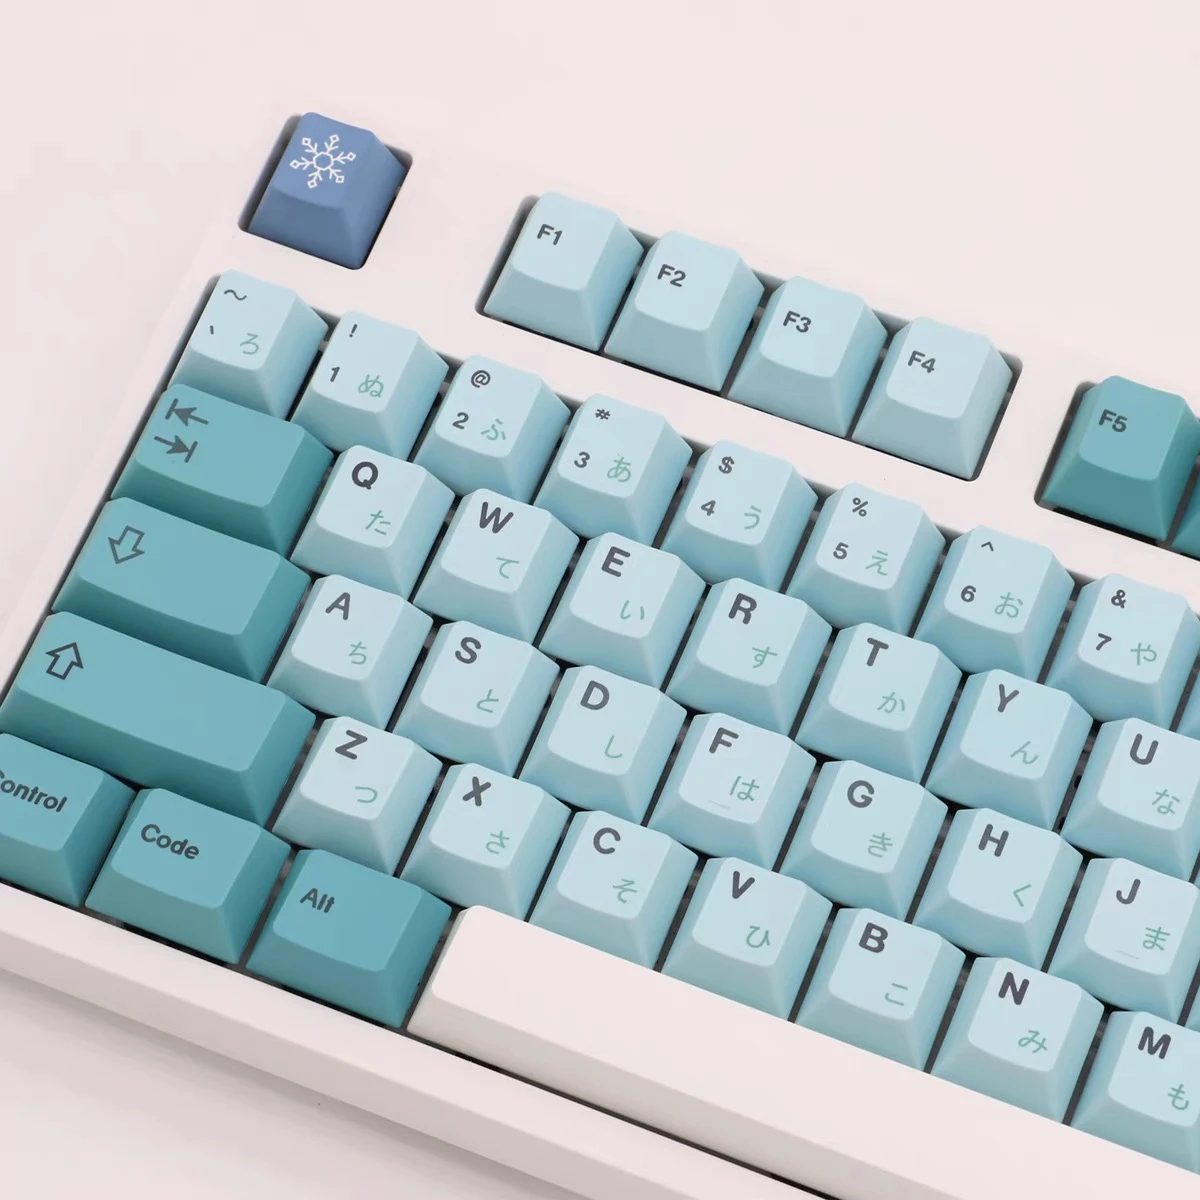 

Колпачки для механической клавиатуры 61 64 84 142 клавиши GMK Iceberg PBT, колпачки для клавиш Cherry Profile DYE-SUB, японские английские колпачки для клавиатур...